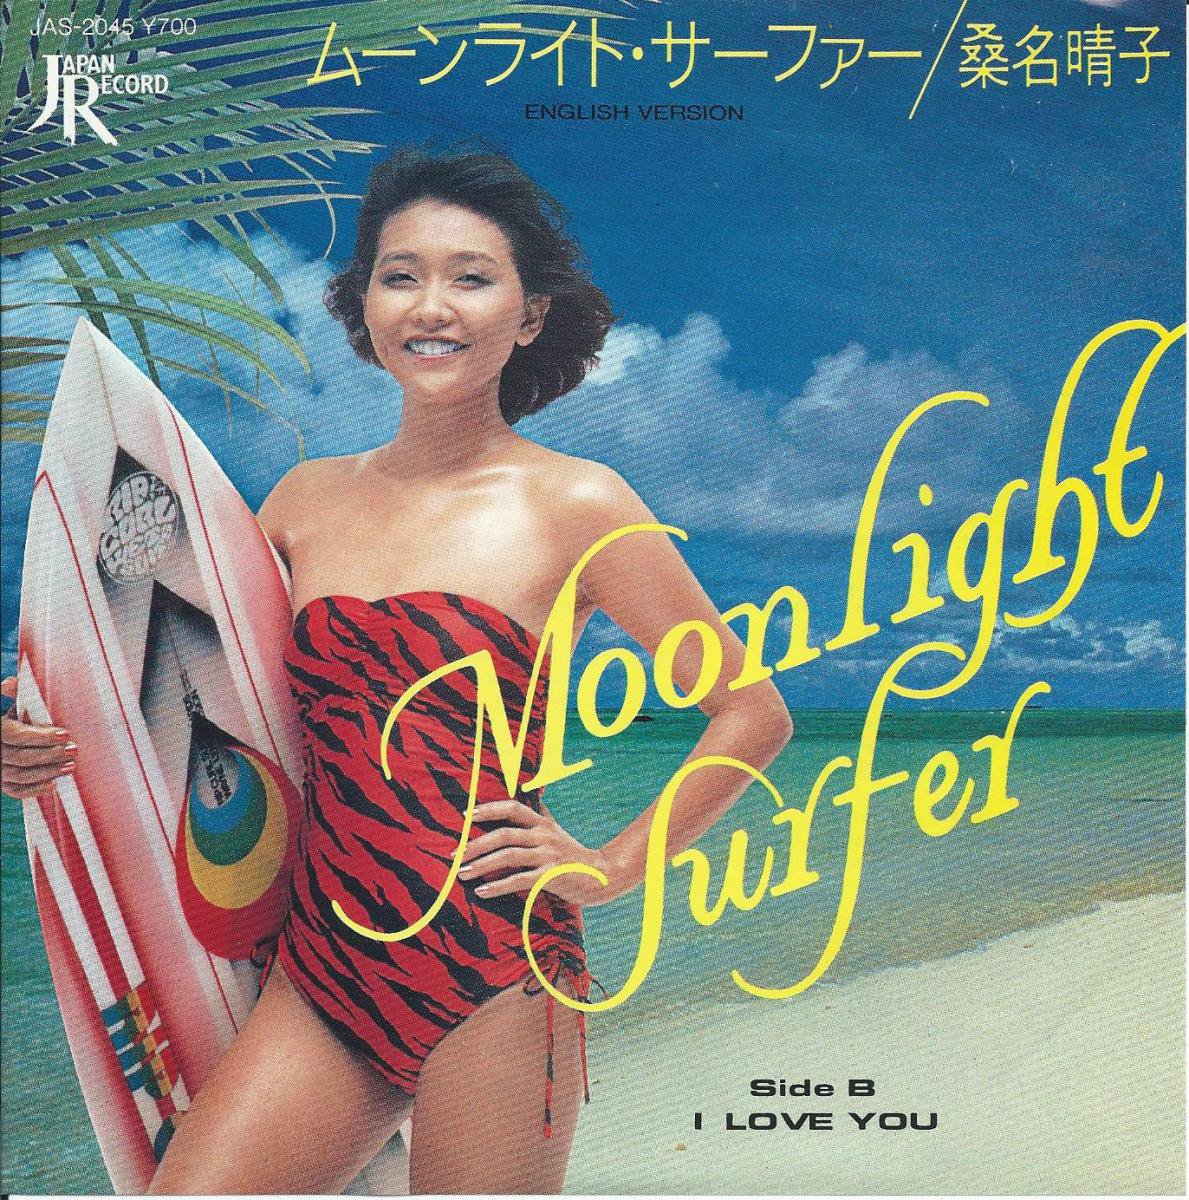 桑名晴子 HARUKO KUWANA / ムーンライト・サーファー MOONLIGHT SURFER-(ENGLISH VERSION) (7